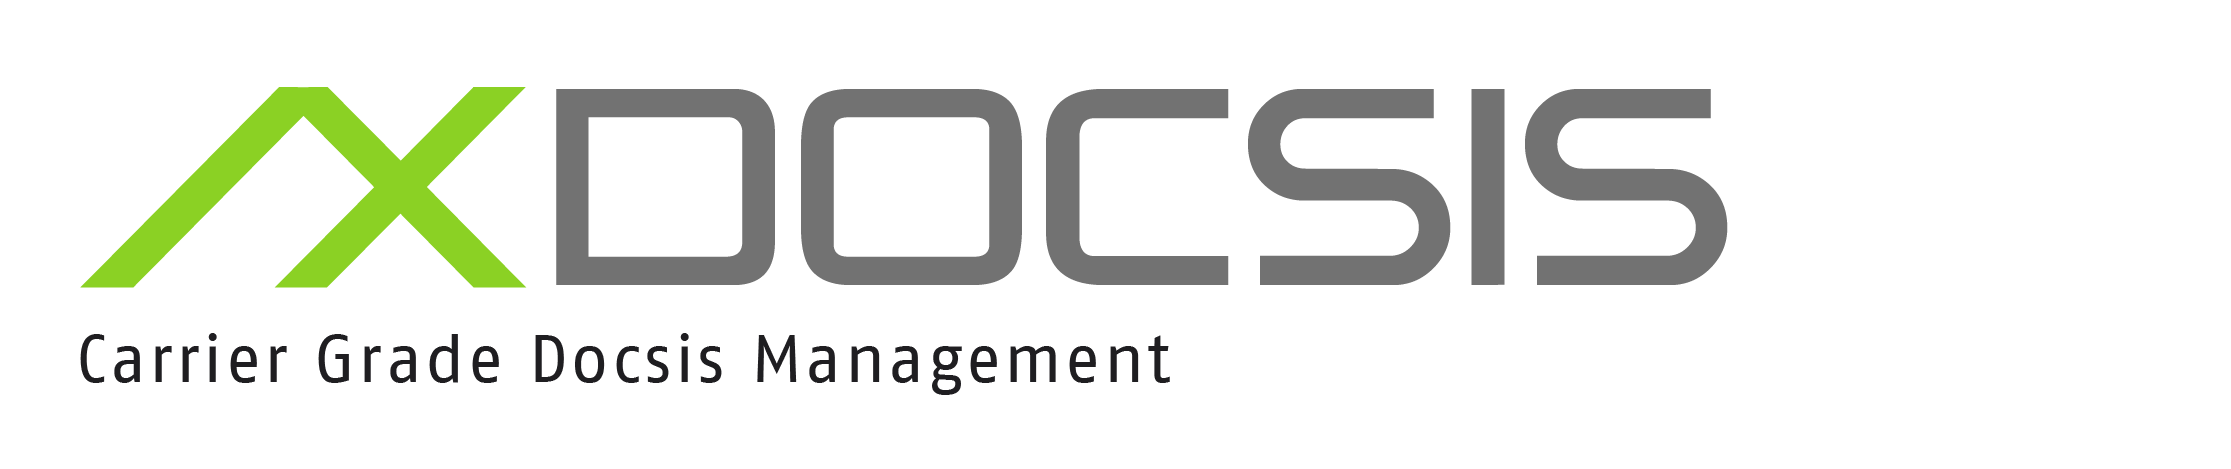 Axiros AX DOCSIS-Produktlogo